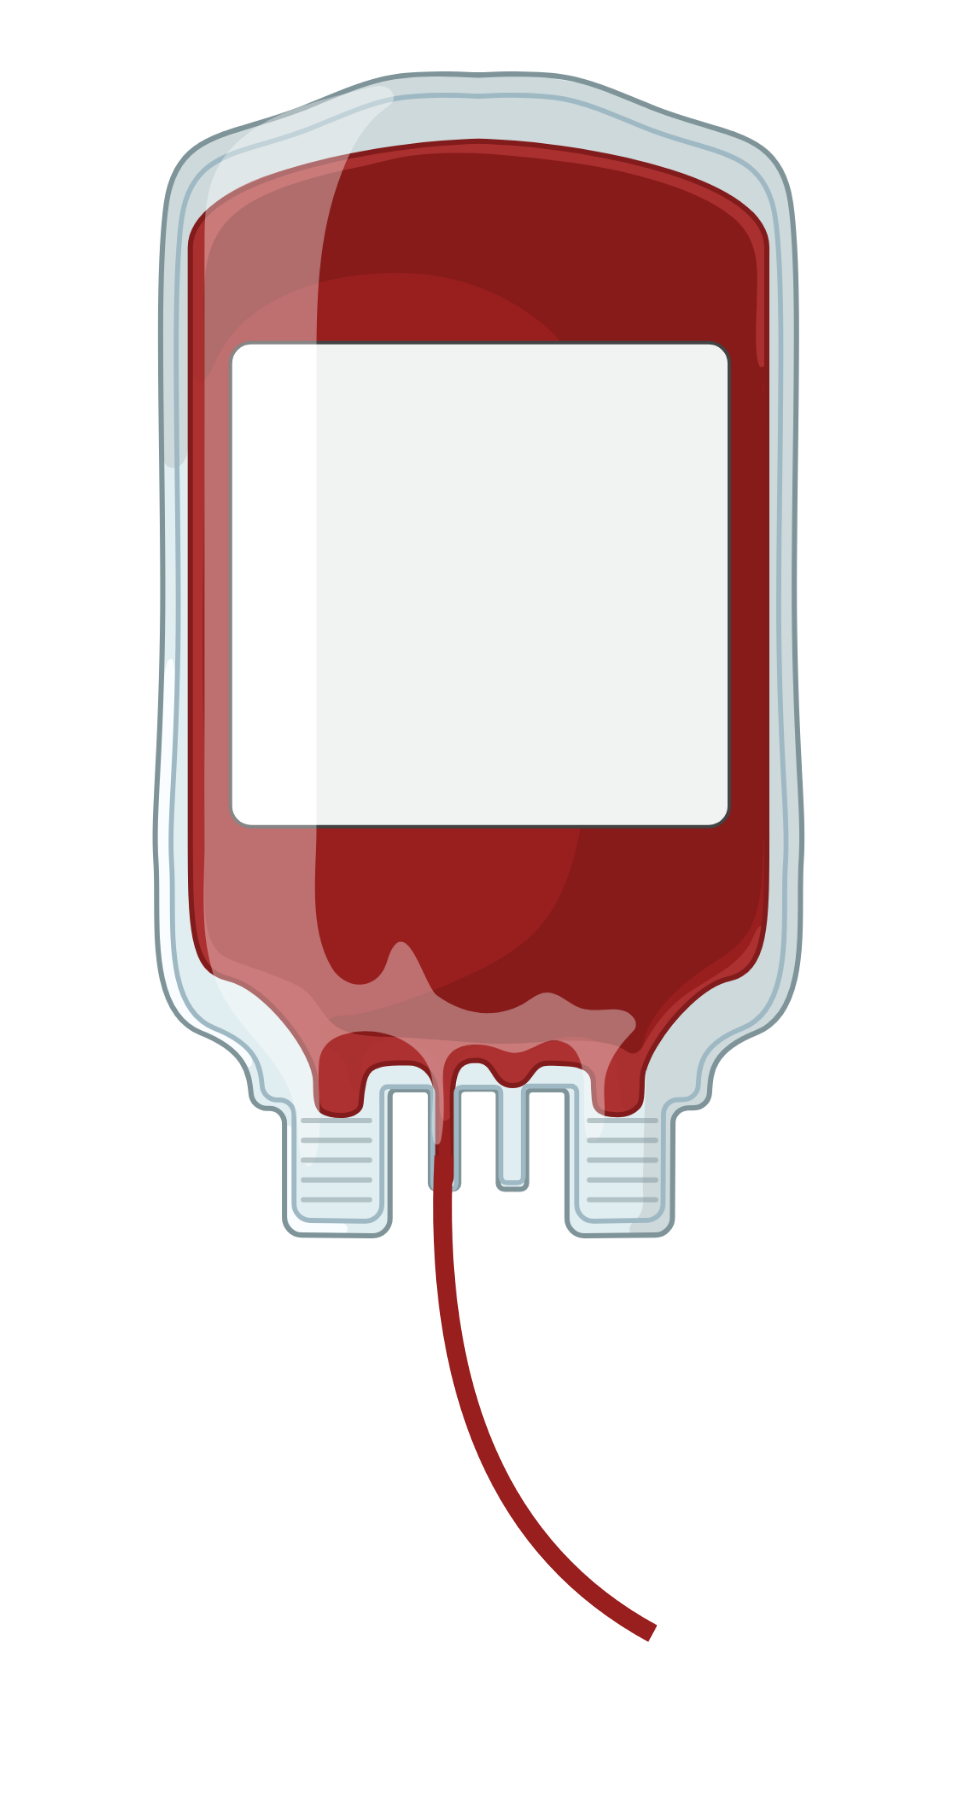 Bloedzak voor bloedtransfusie